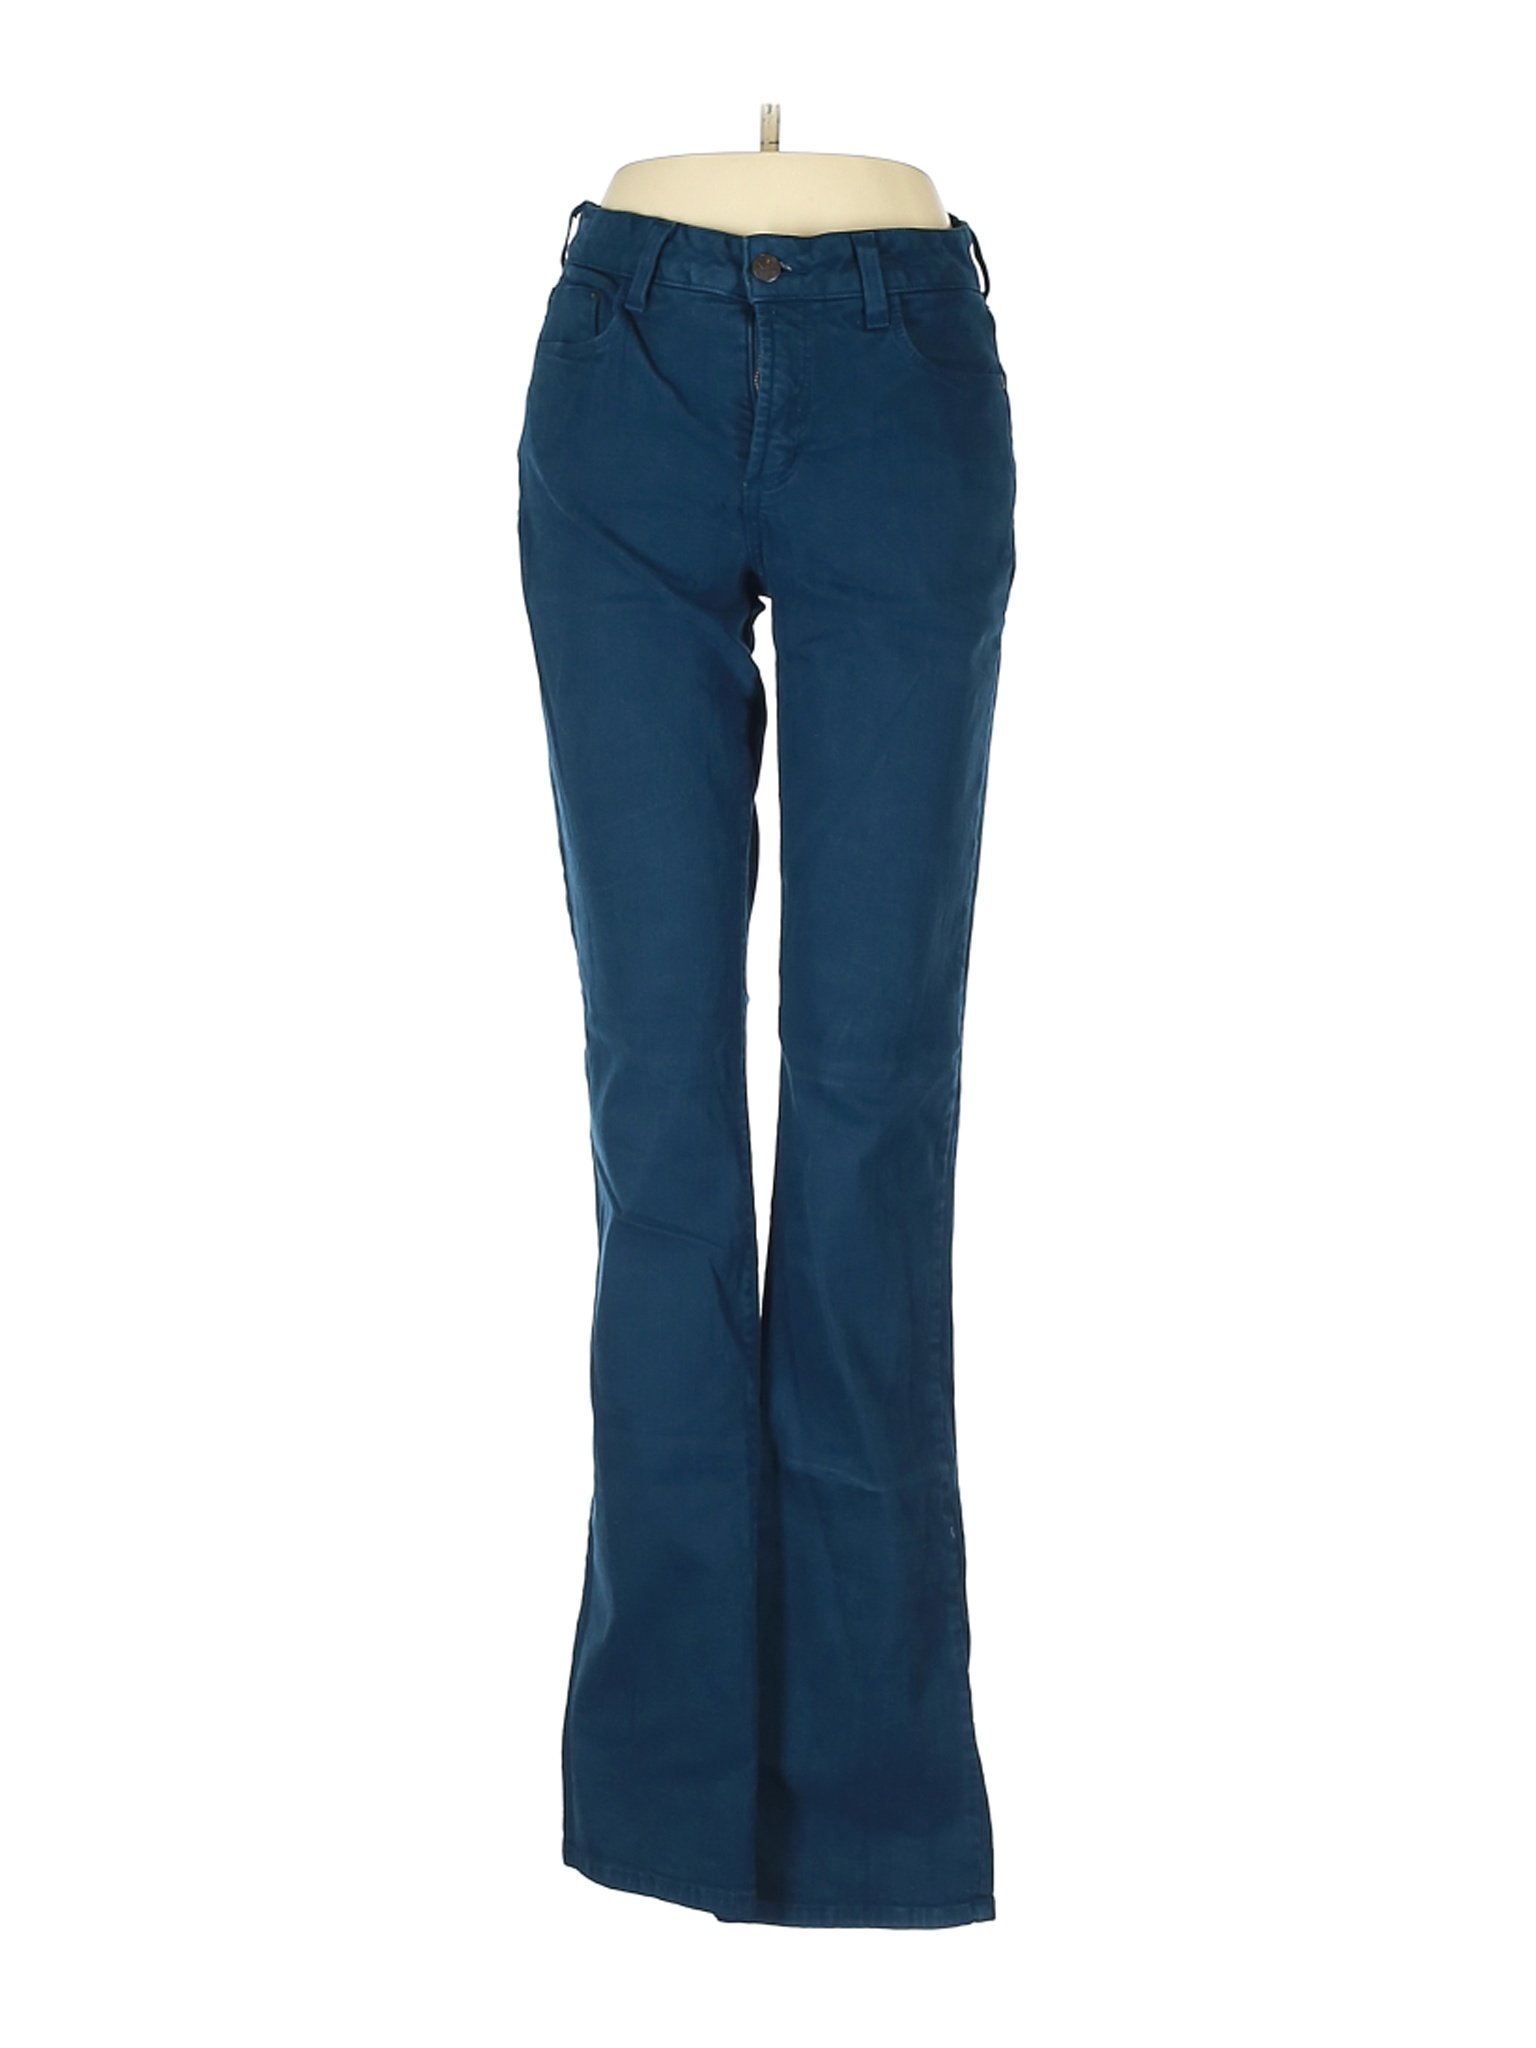 NYDJ Women Green Jeans 2 | eBay